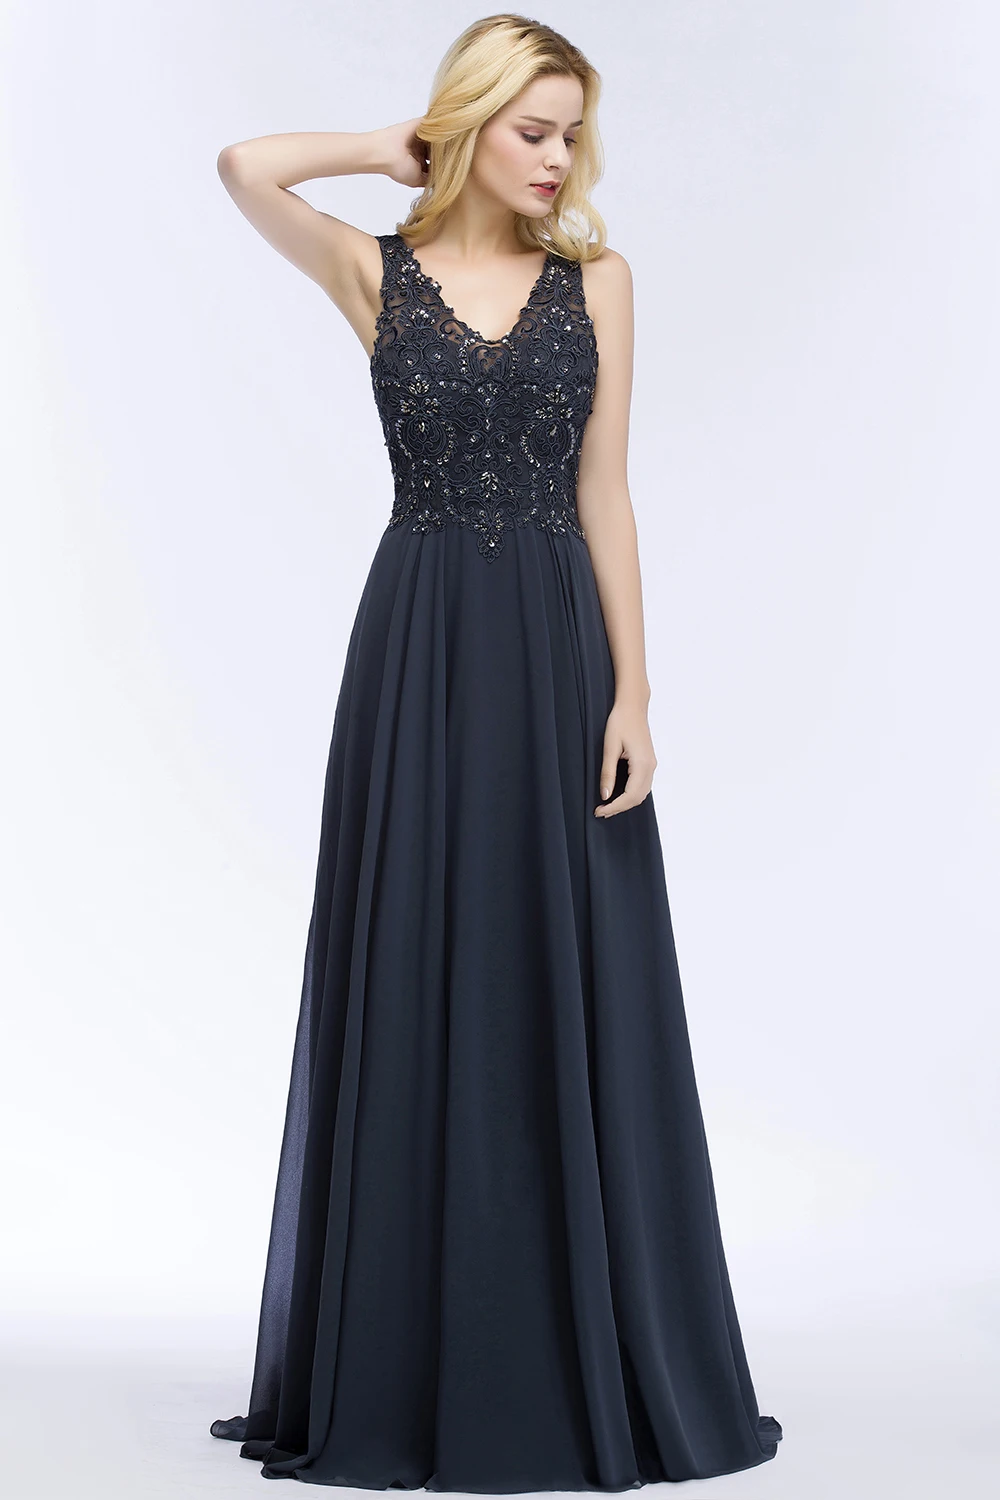 Misshow вечернее платье великолепное длинное темно-синее шифоновое официальное платье Элегантное сексуальное с v-образным вырезом без рукавов robe de soiree